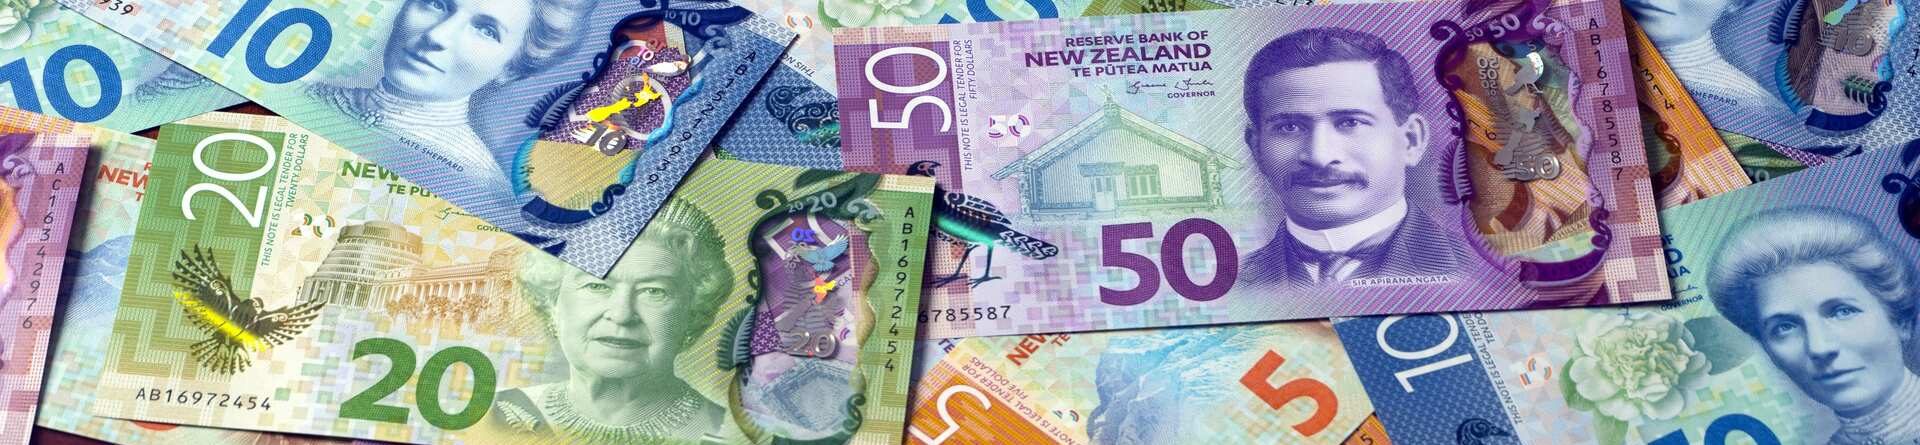 Transferência de dinheiro para a Nova Zelândia